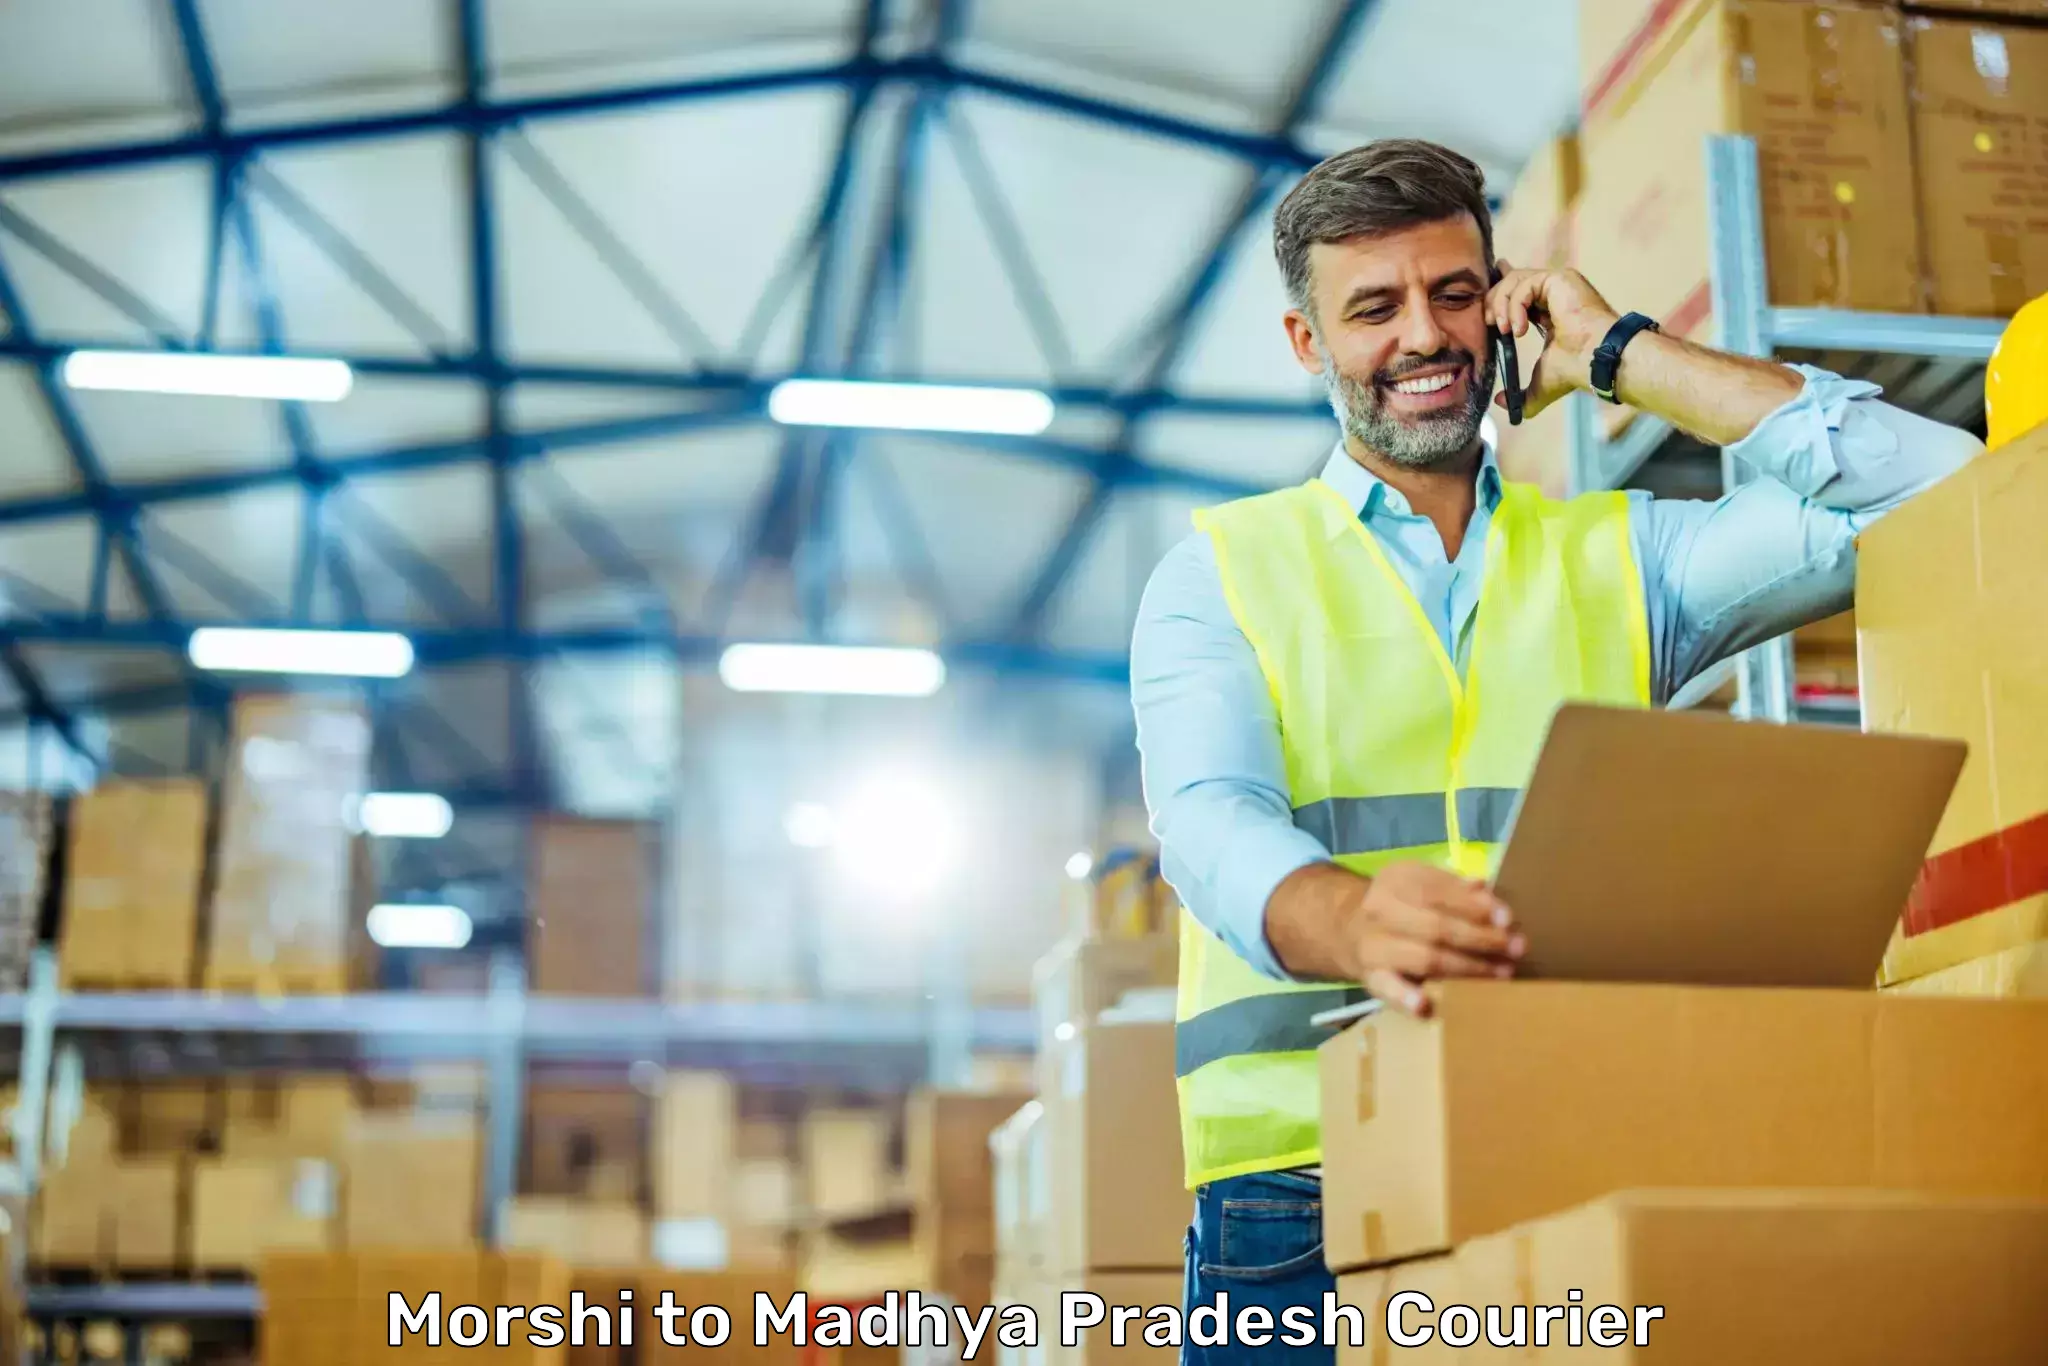 Courier service comparison Morshi to Sendhwa